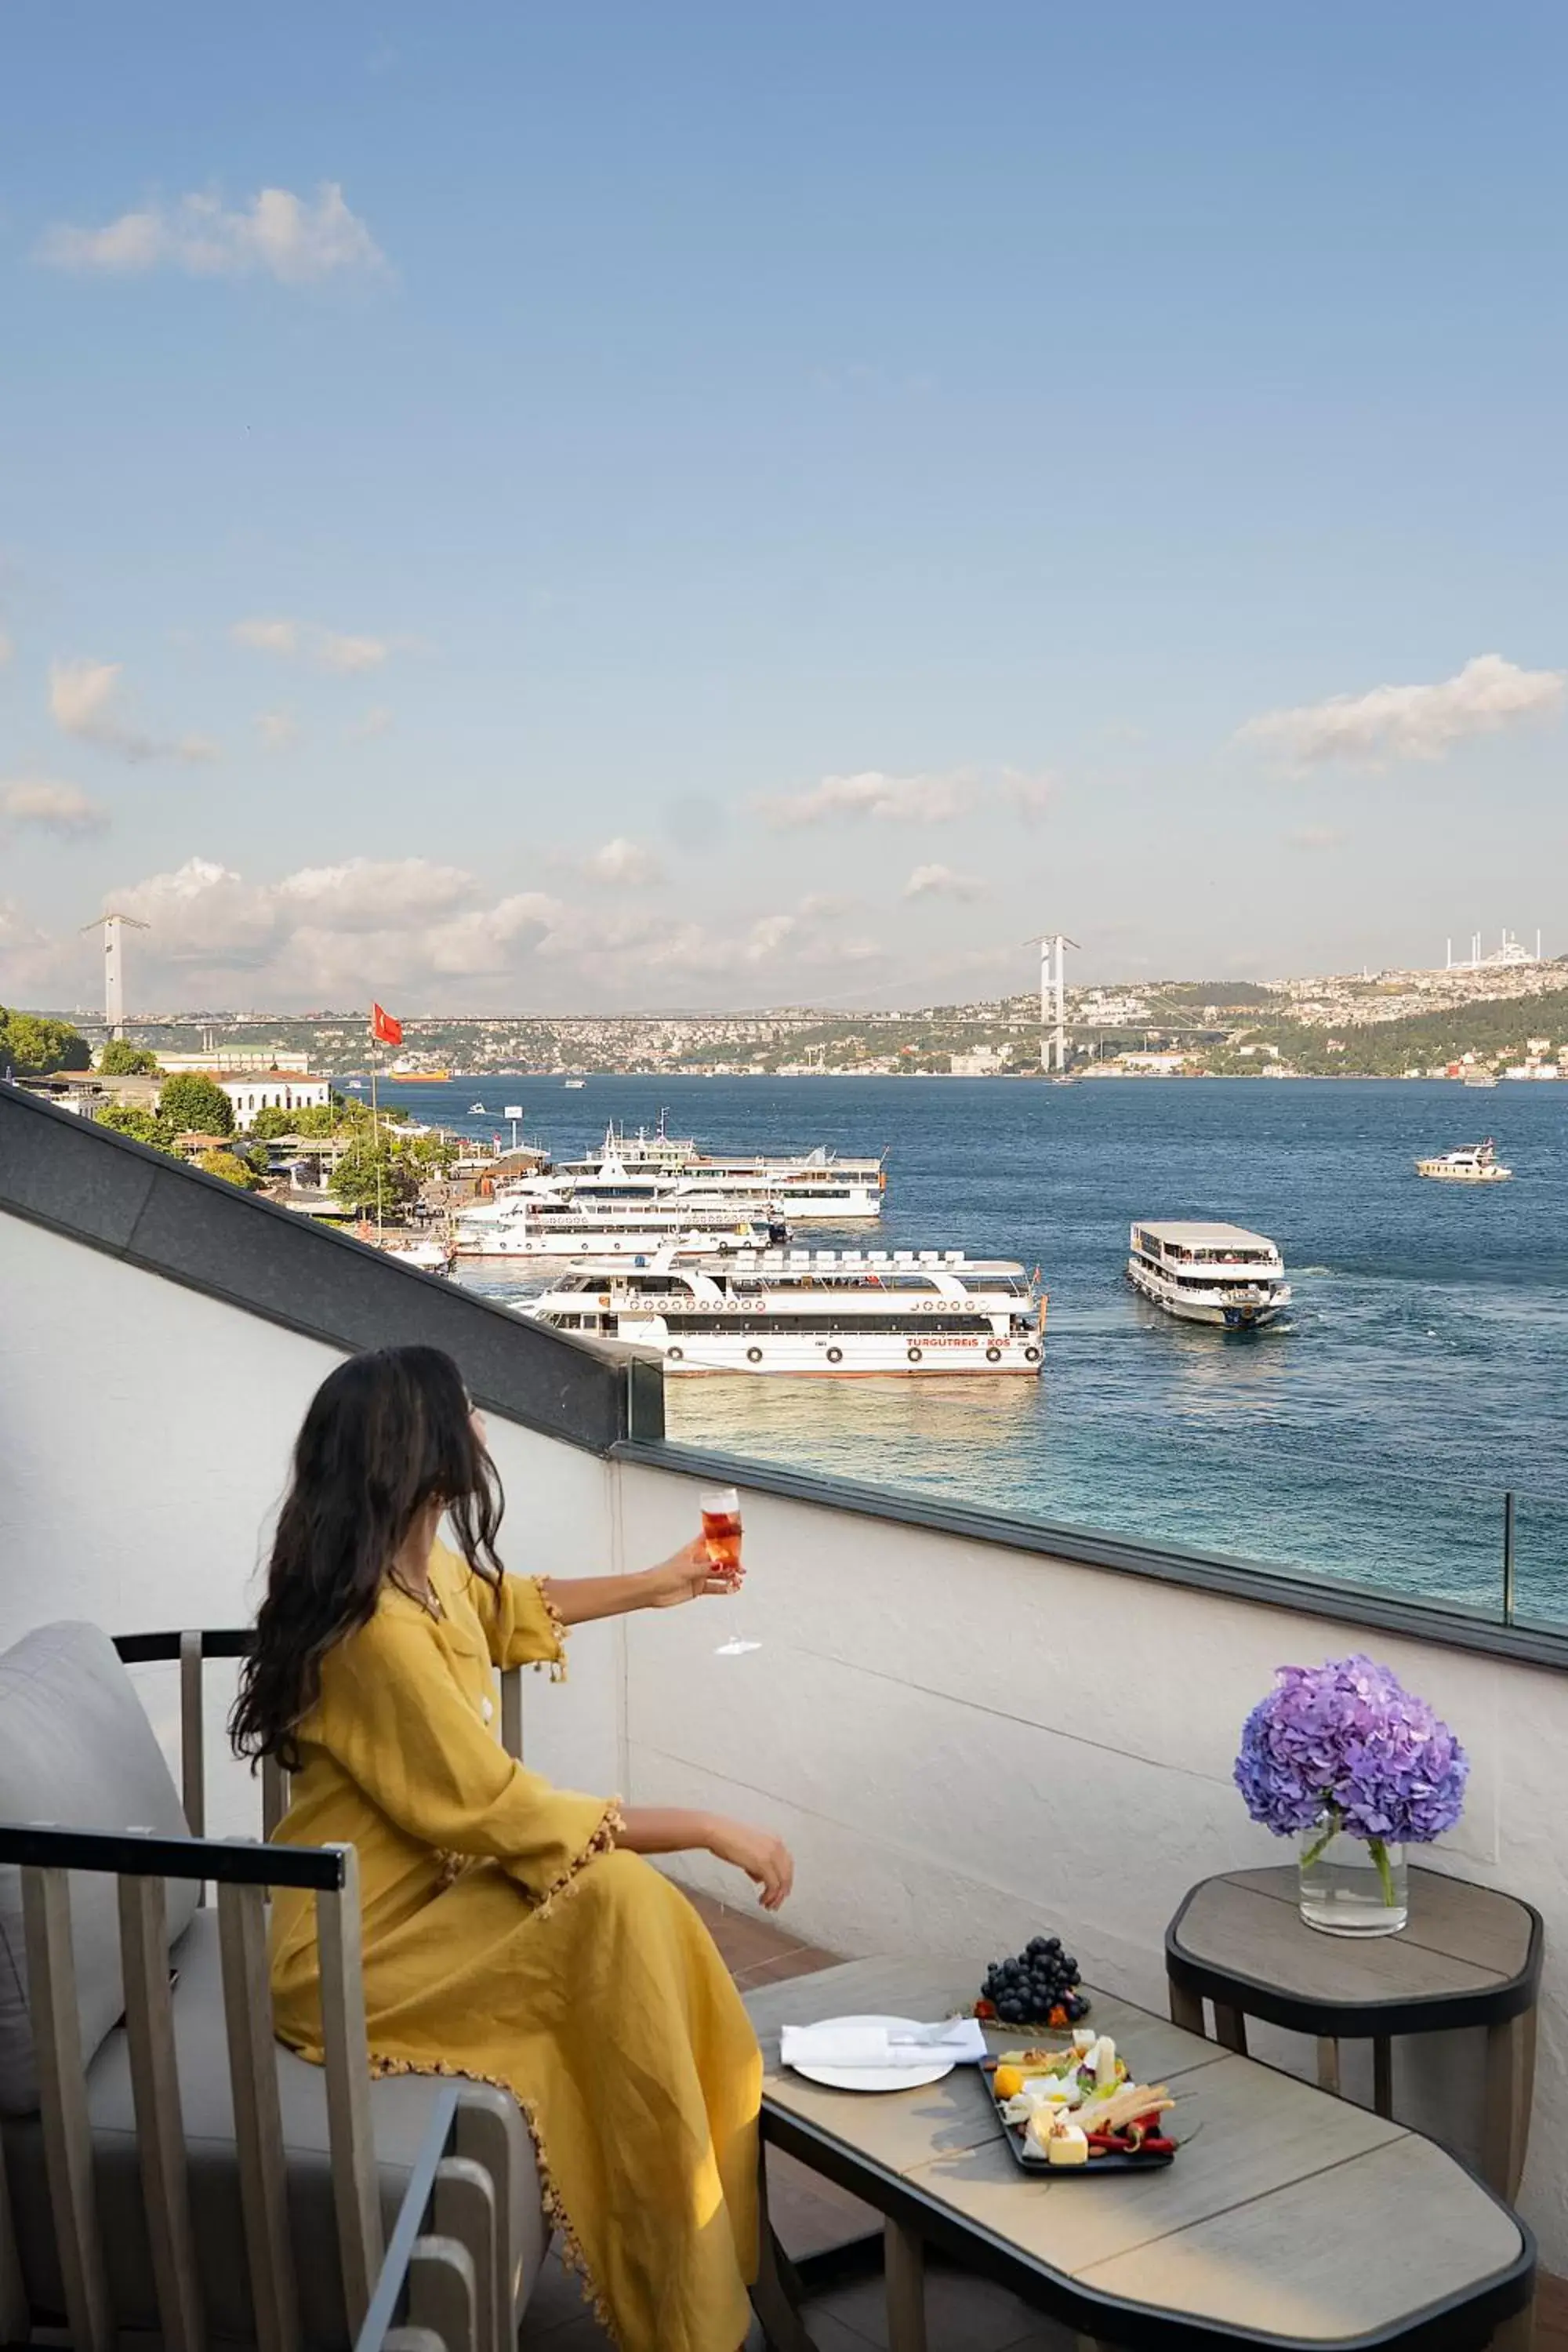 People in Shangri-La Bosphorus, Istanbul